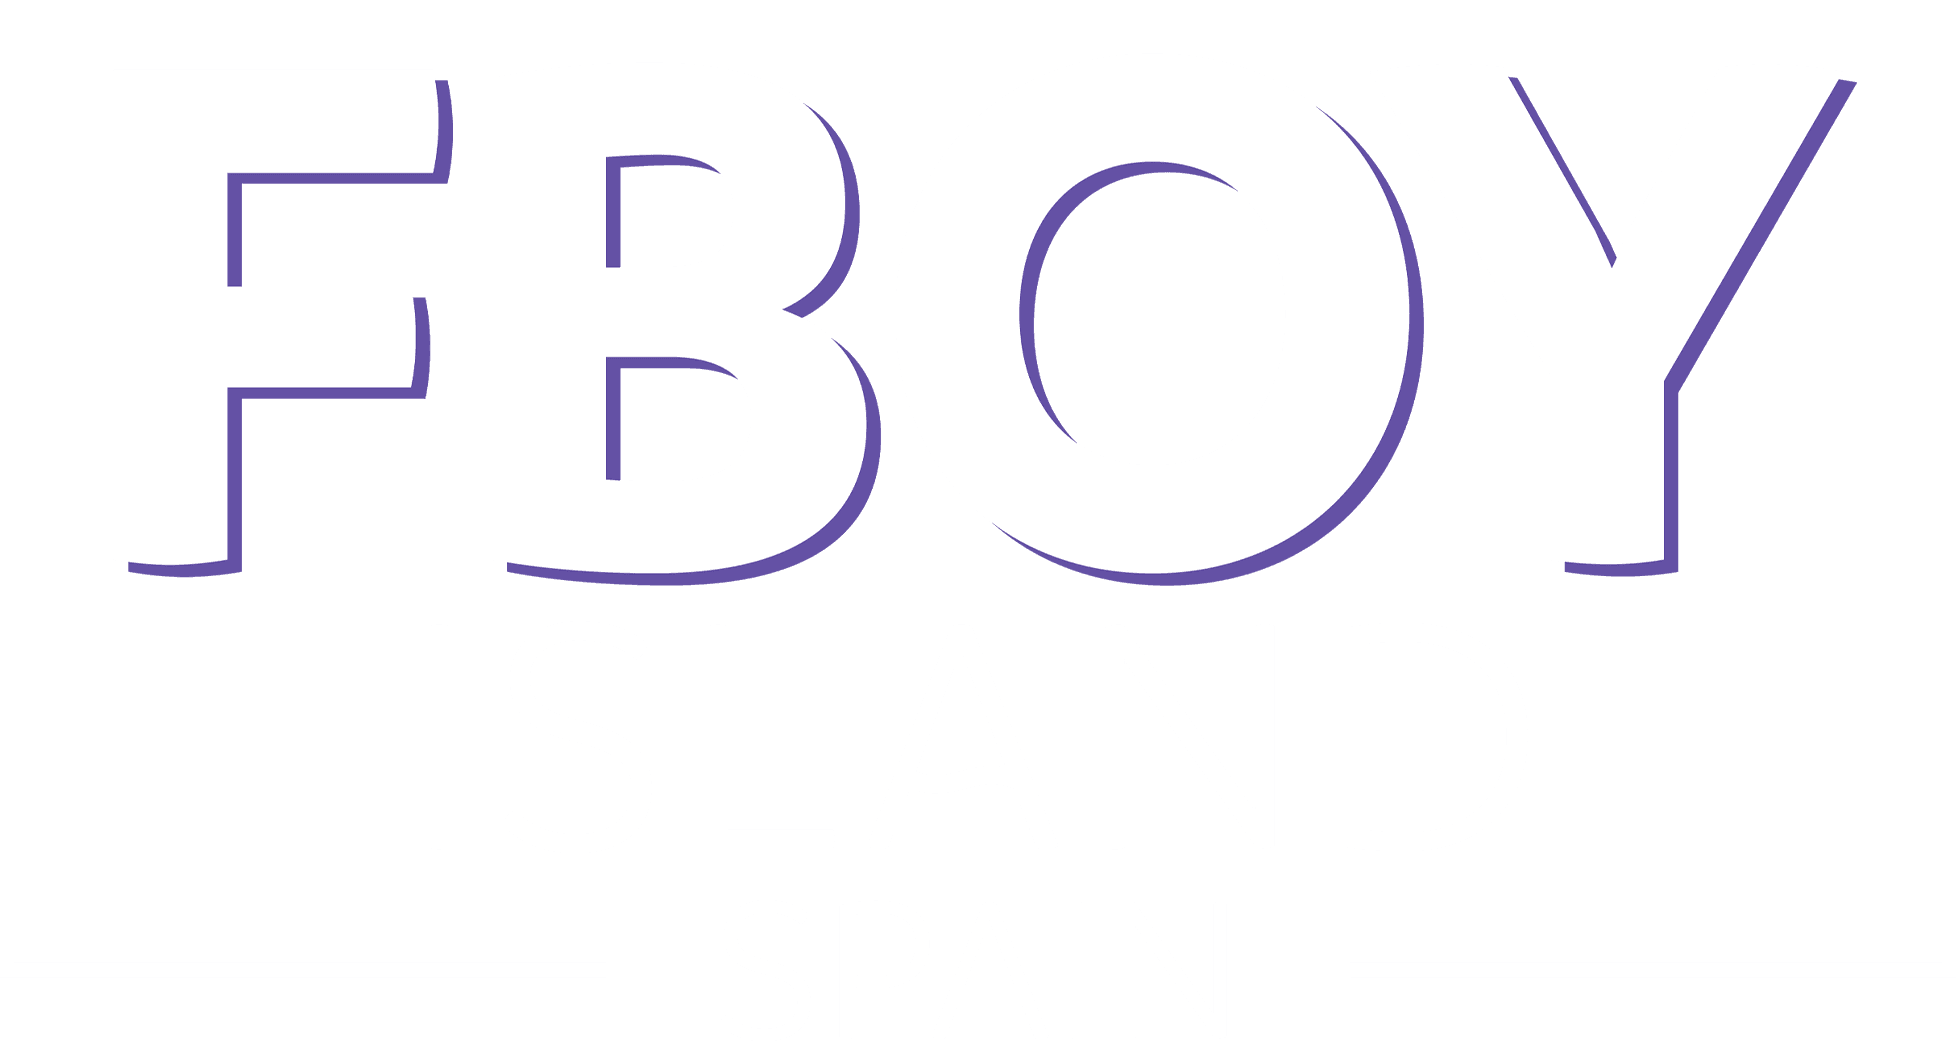 FBOY Island Spain logo